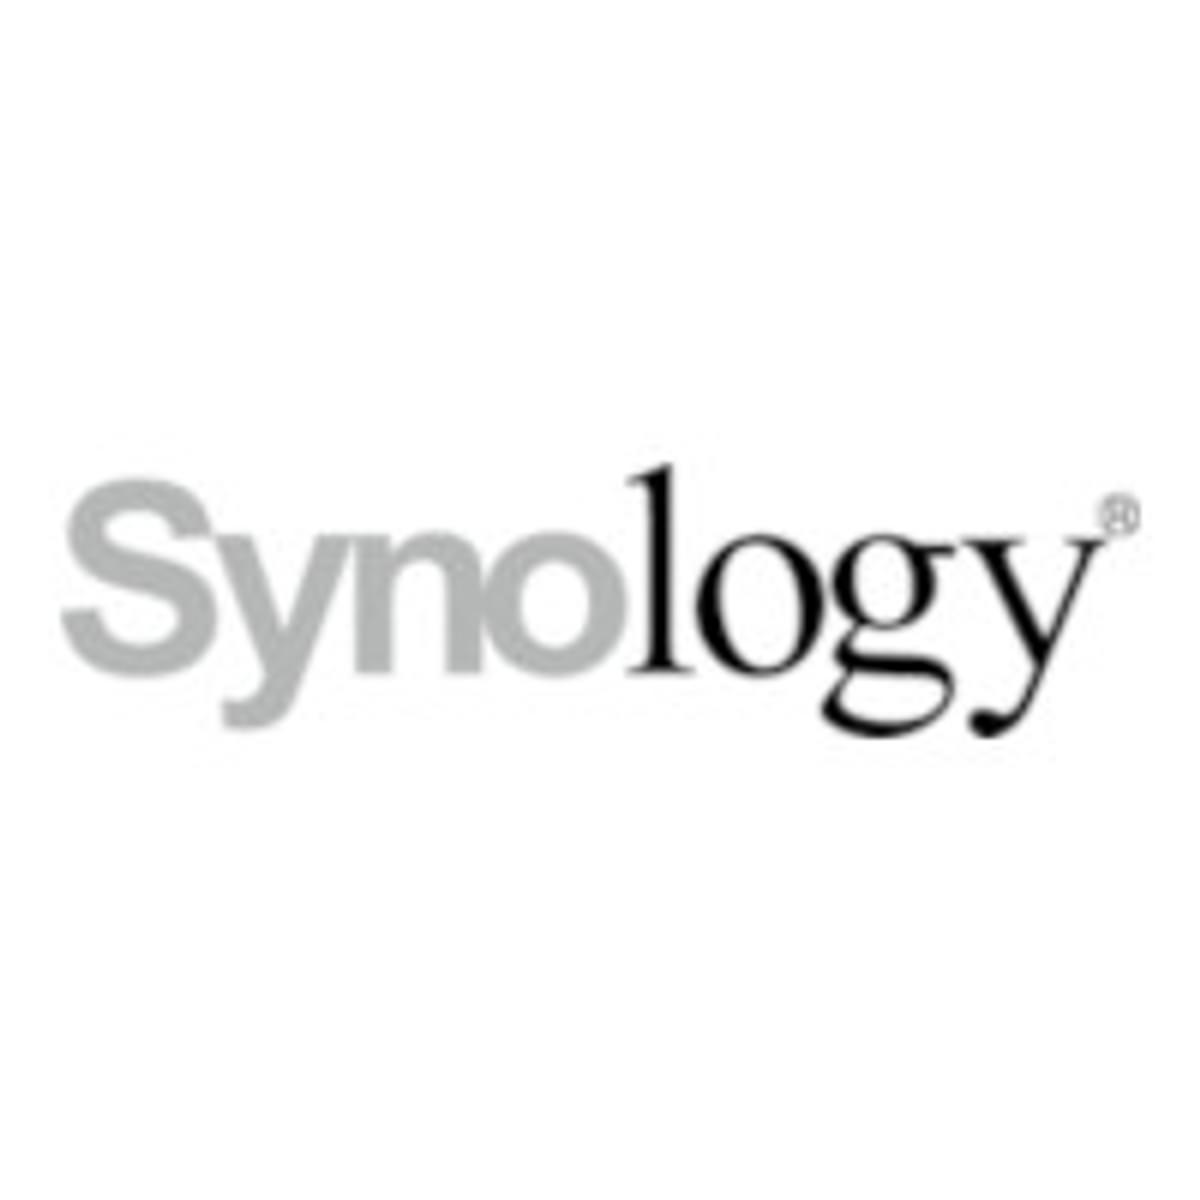 Synology komt met DiskStation Manager 7.1 image